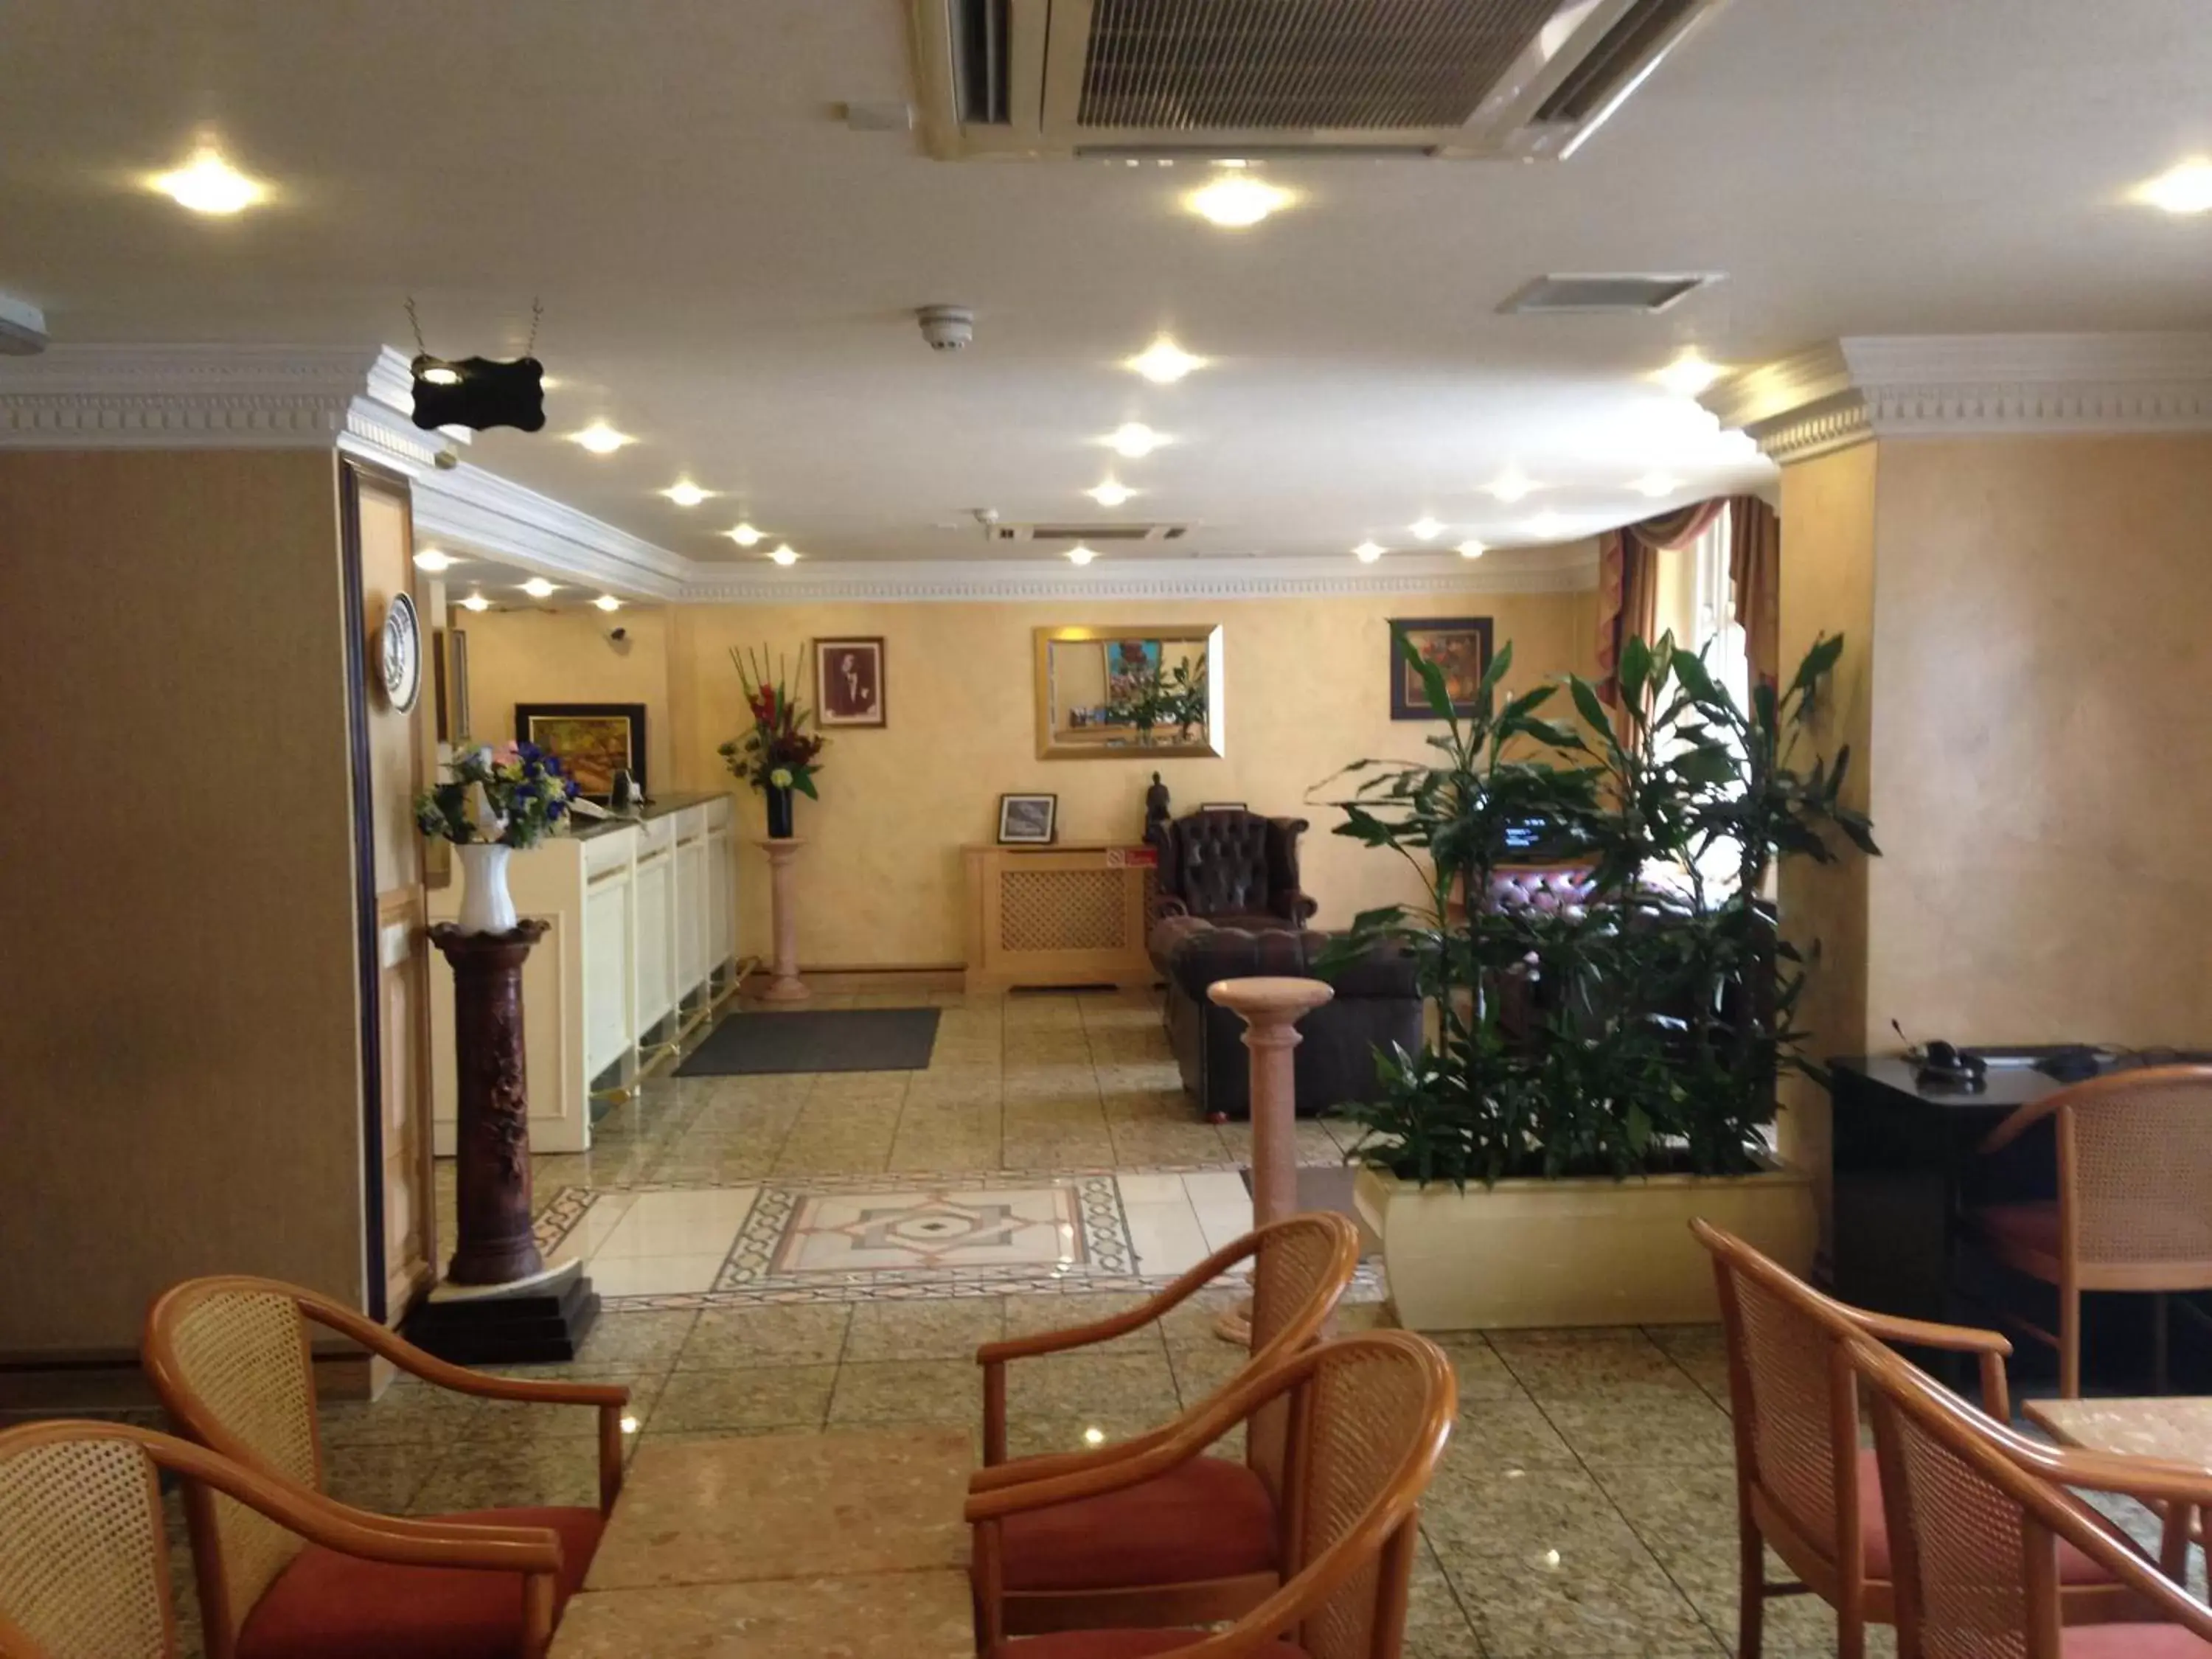 Lobby or reception, Lobby/Reception in Troy Hotel